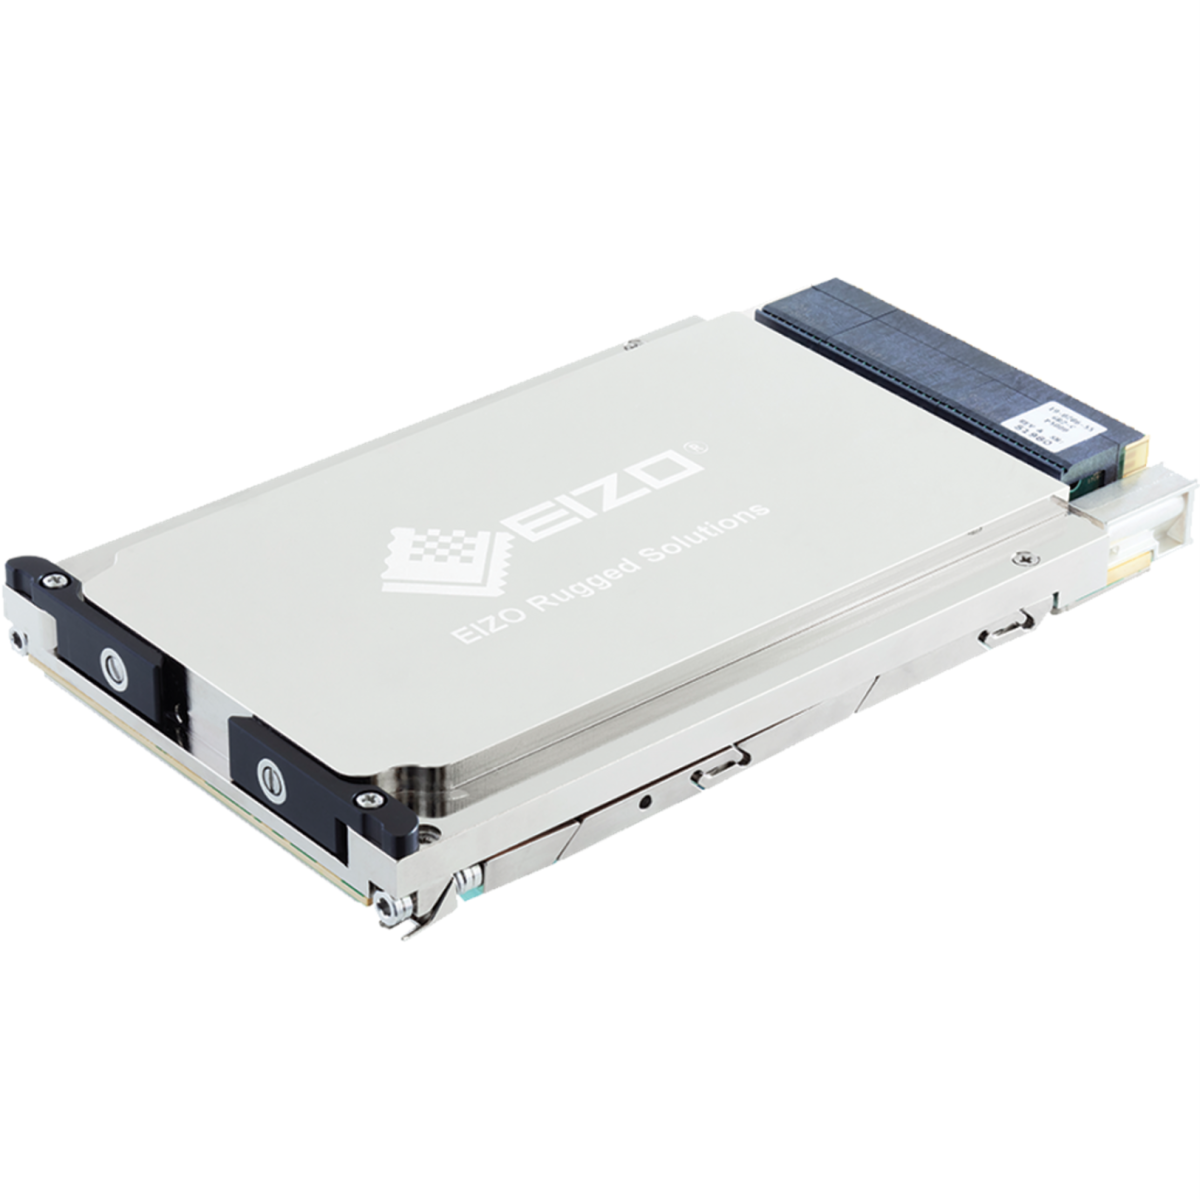 SOSA-Aligned 3U VPX NVIDIA A4500 Graphics & GPGPU Card